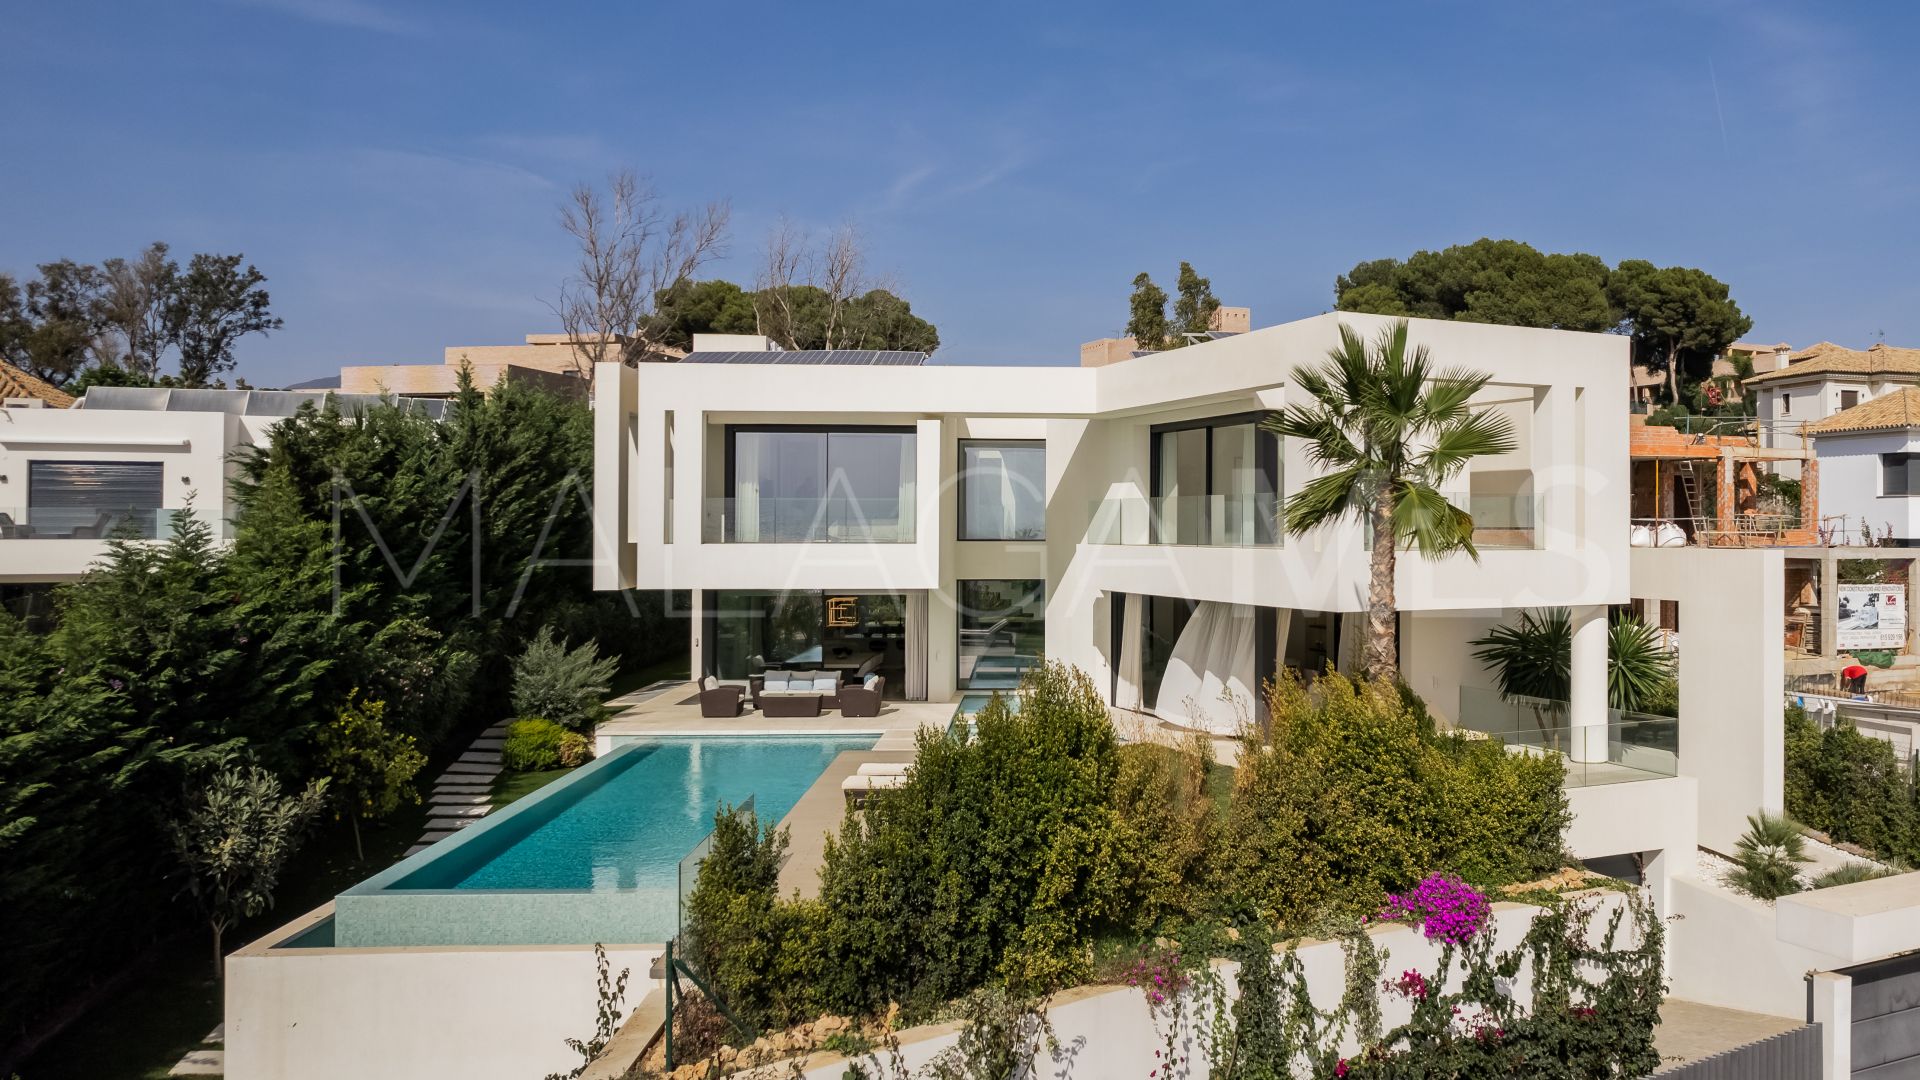 Villa a la venta de 5 bedrooms in Real de Zaragoza